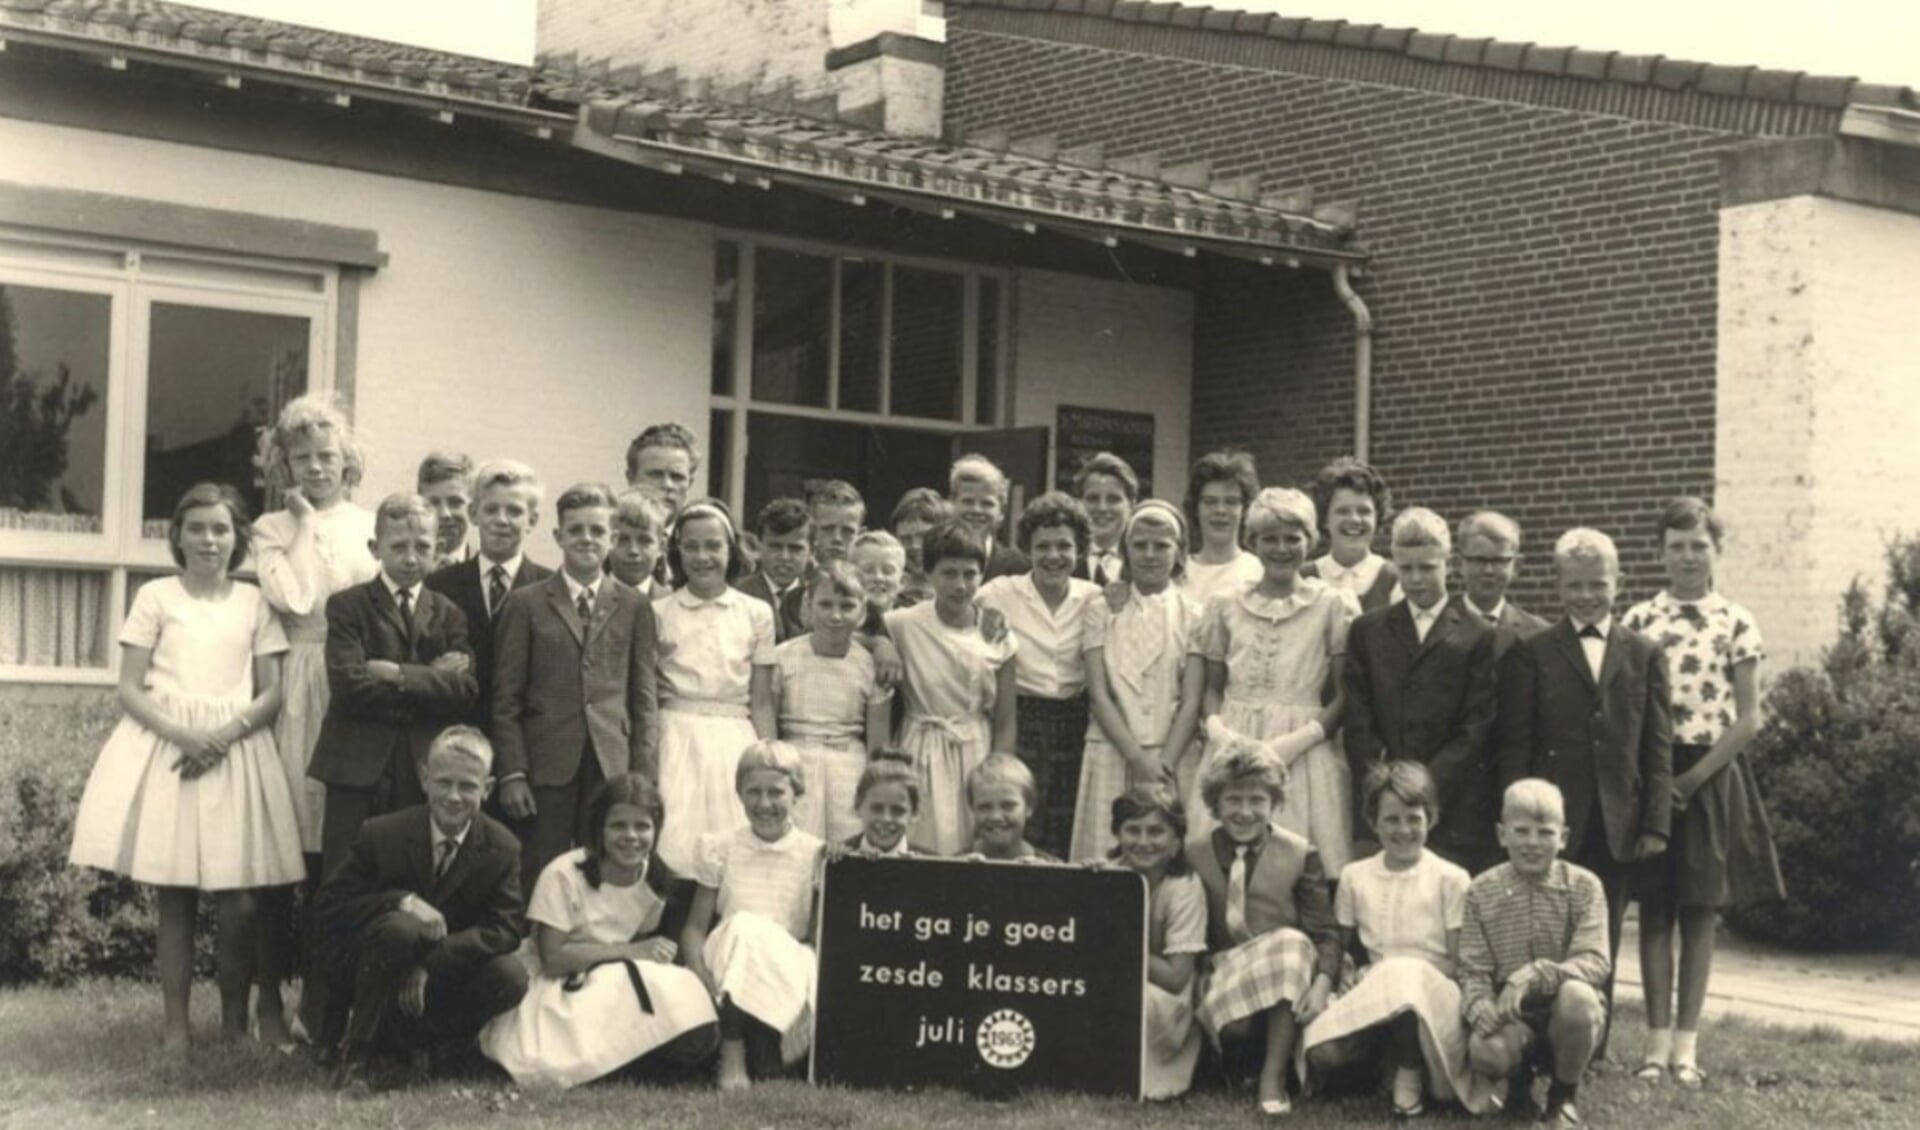 Zesde klas van de St. Martinusschool in Kethel Tuindorp, aan de Iepenlaan met schoolhoofd M. van Akkeren, ca. 1970. Fotograaf onbekend. 